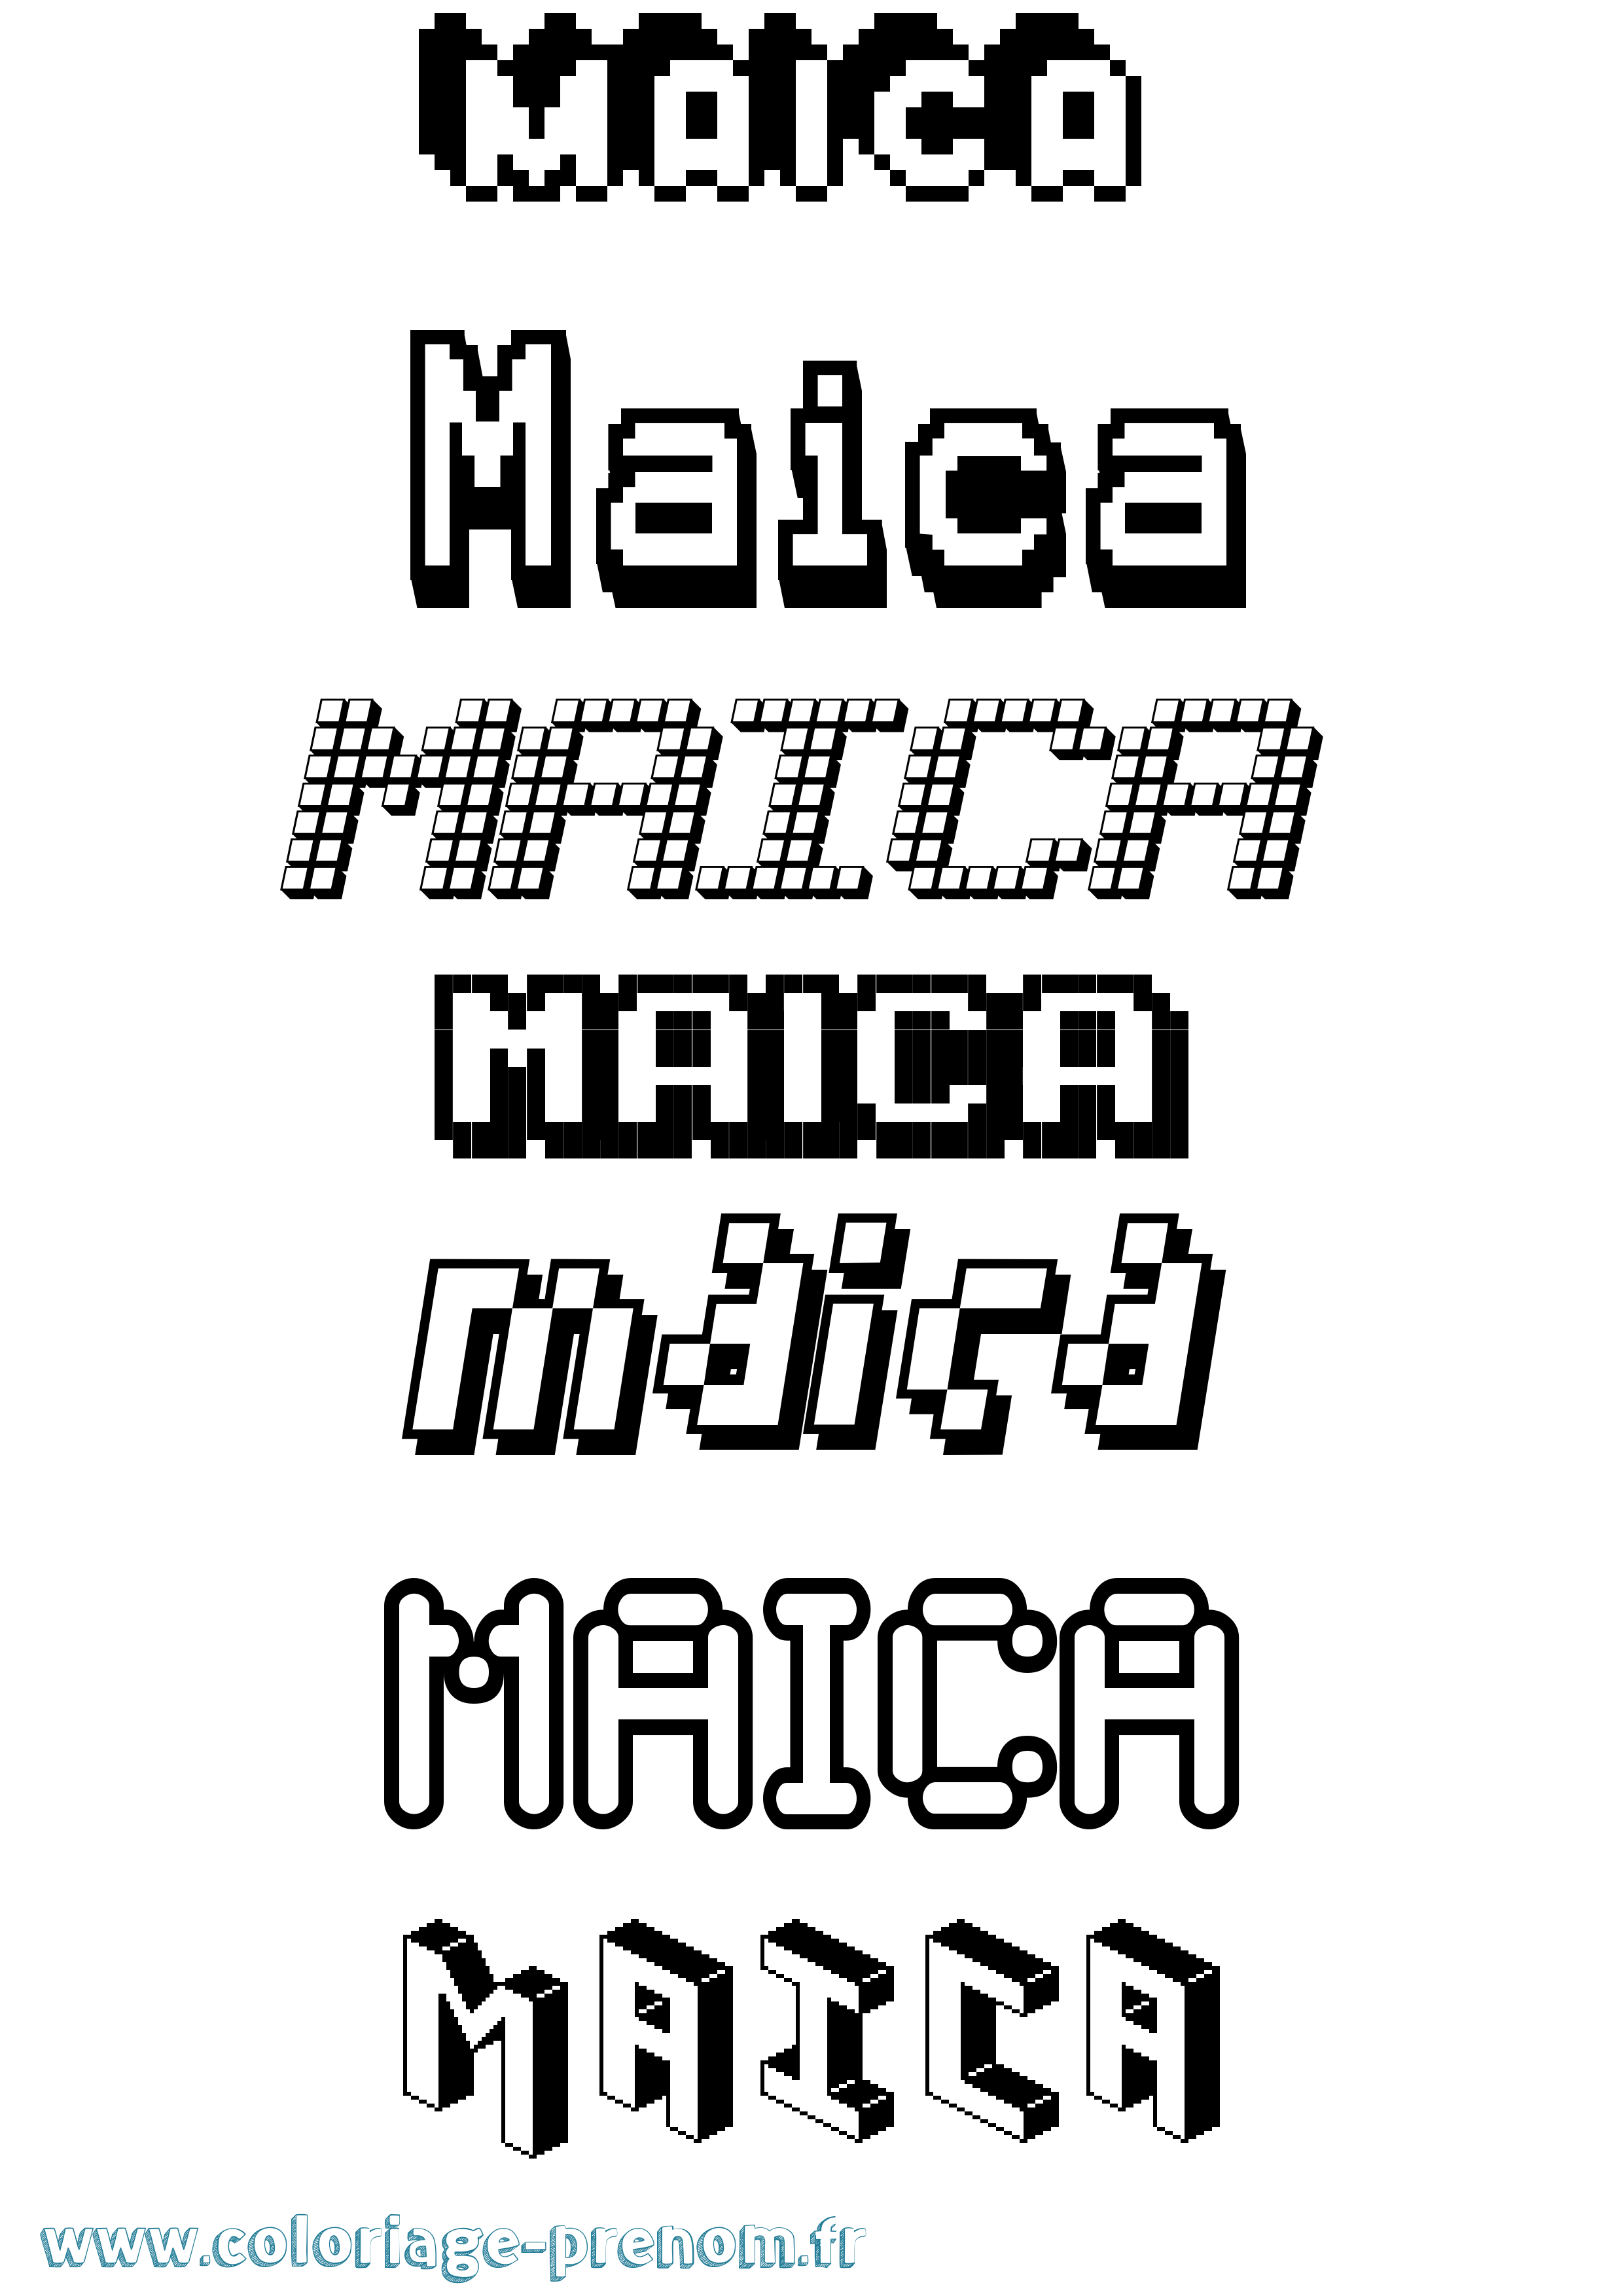 Coloriage prénom Maica Pixel